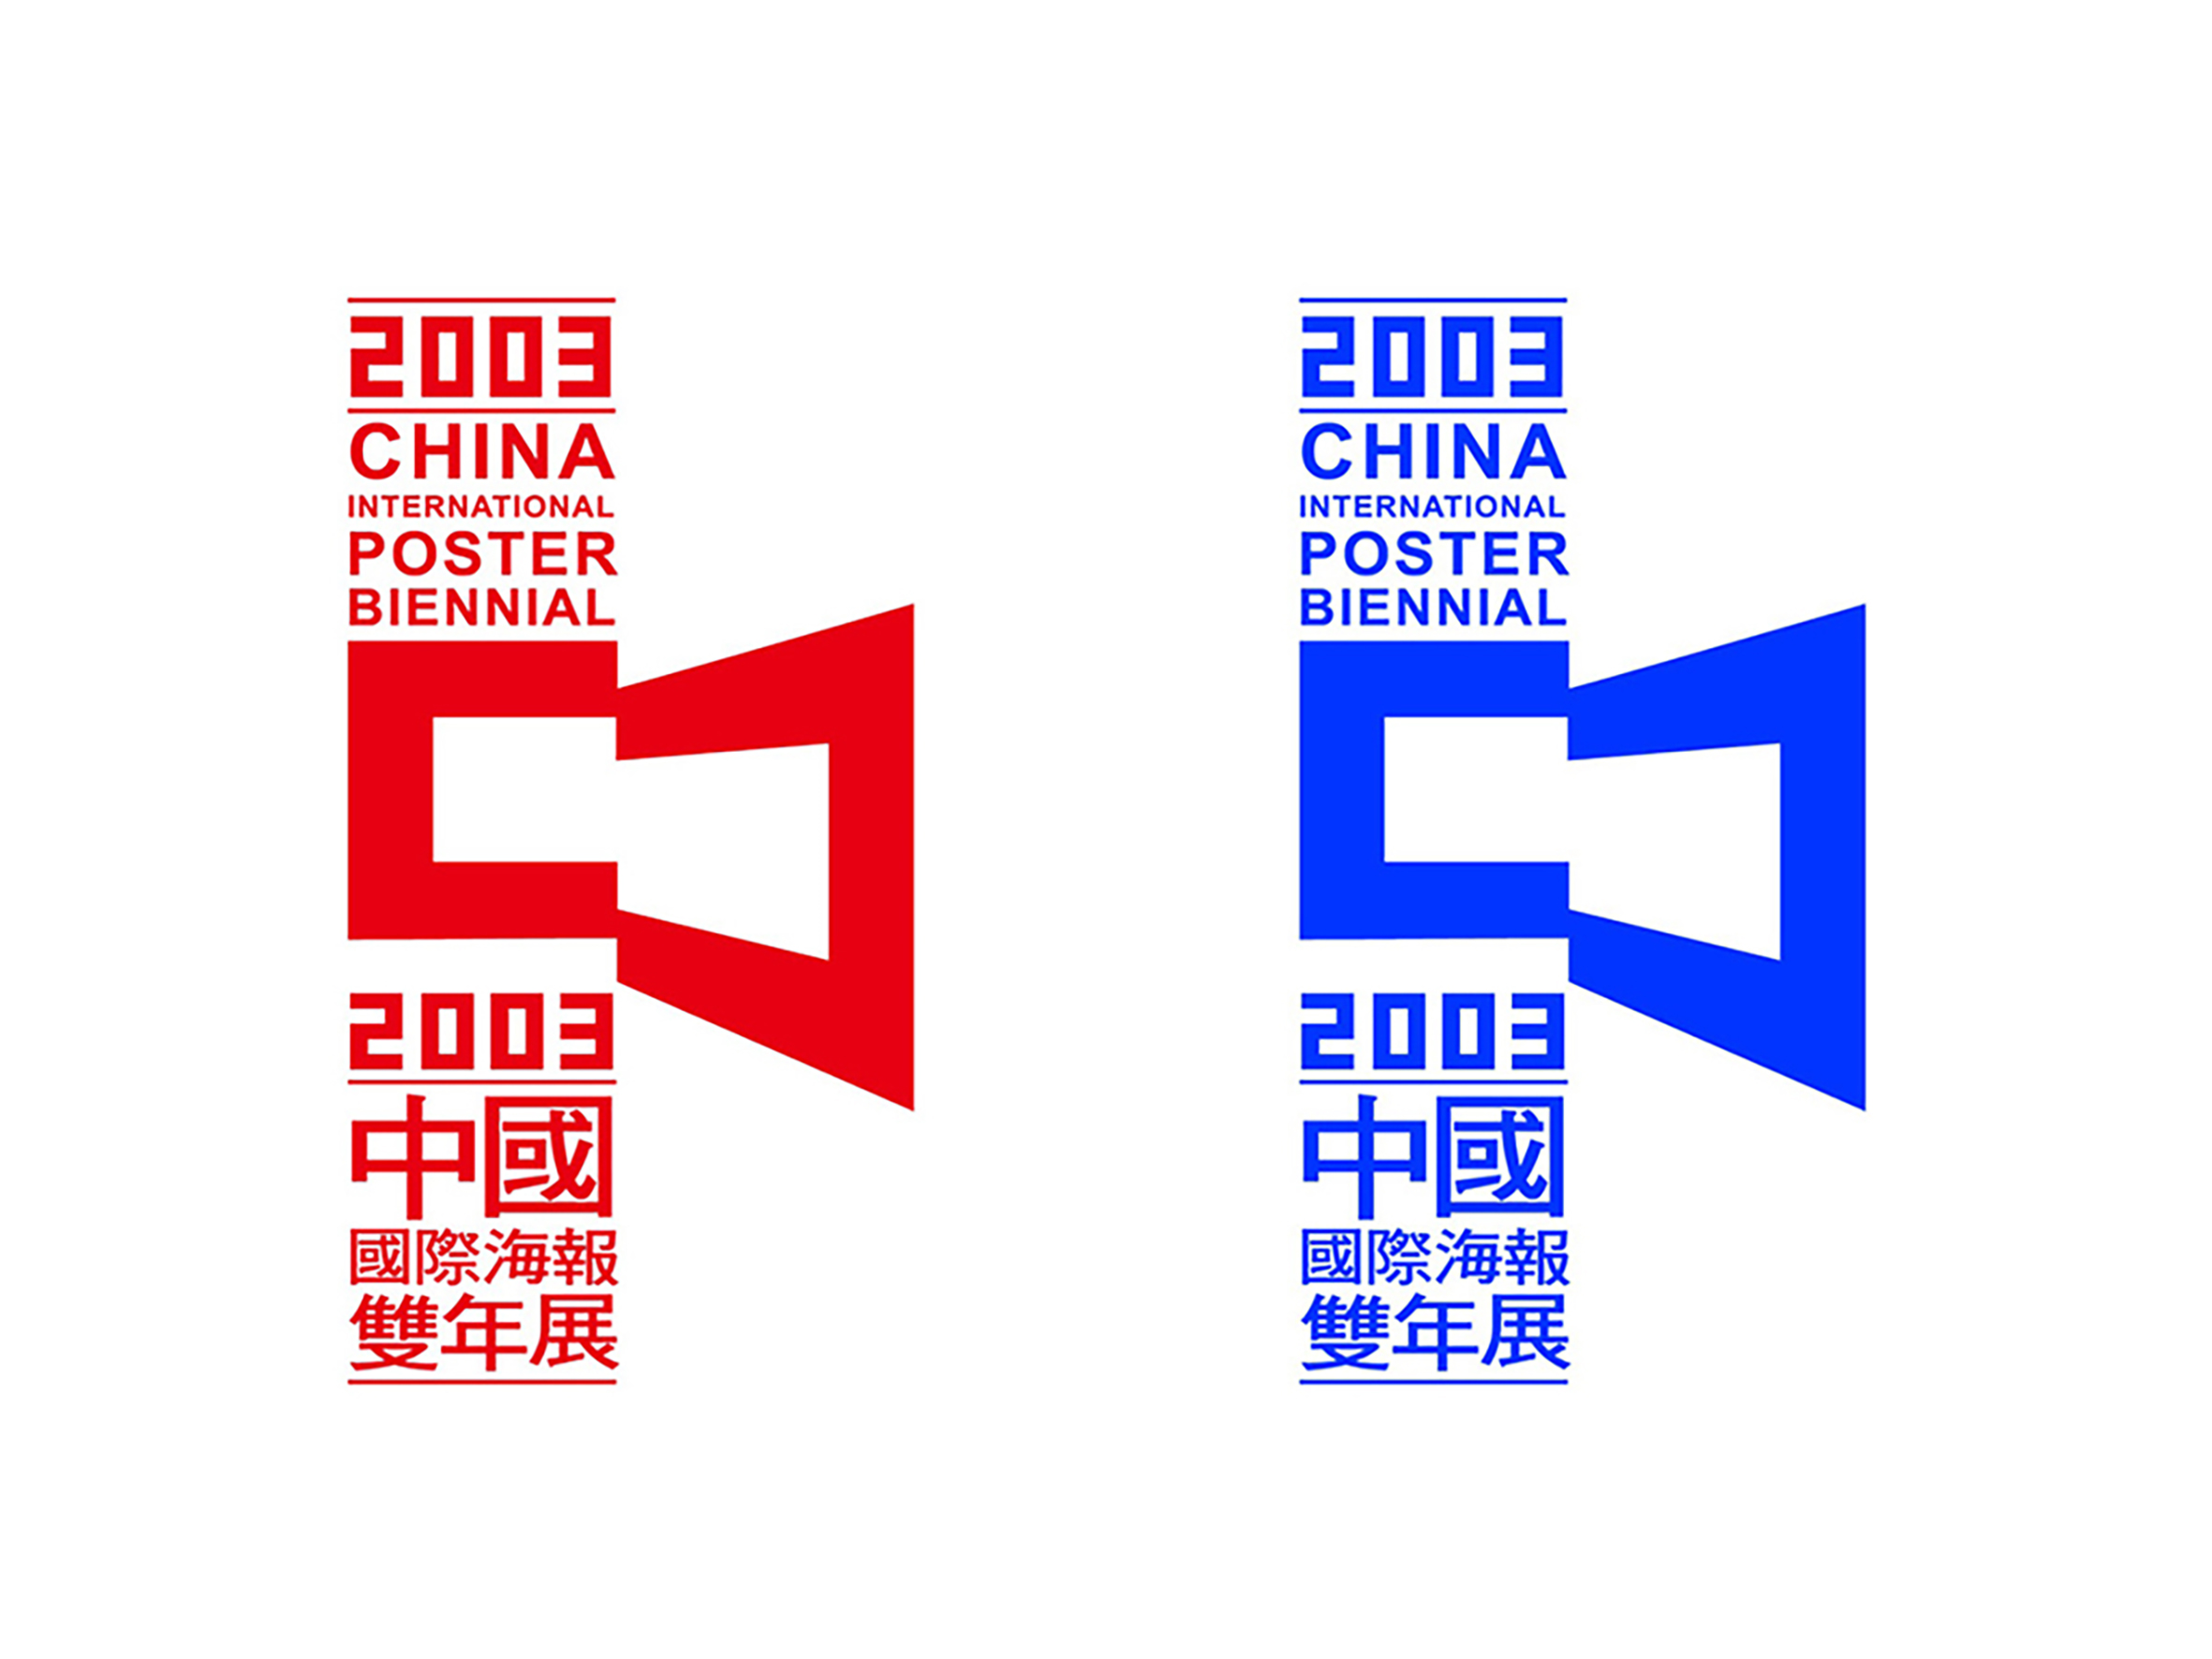 《中国国际海报双年展》——LOGO设计